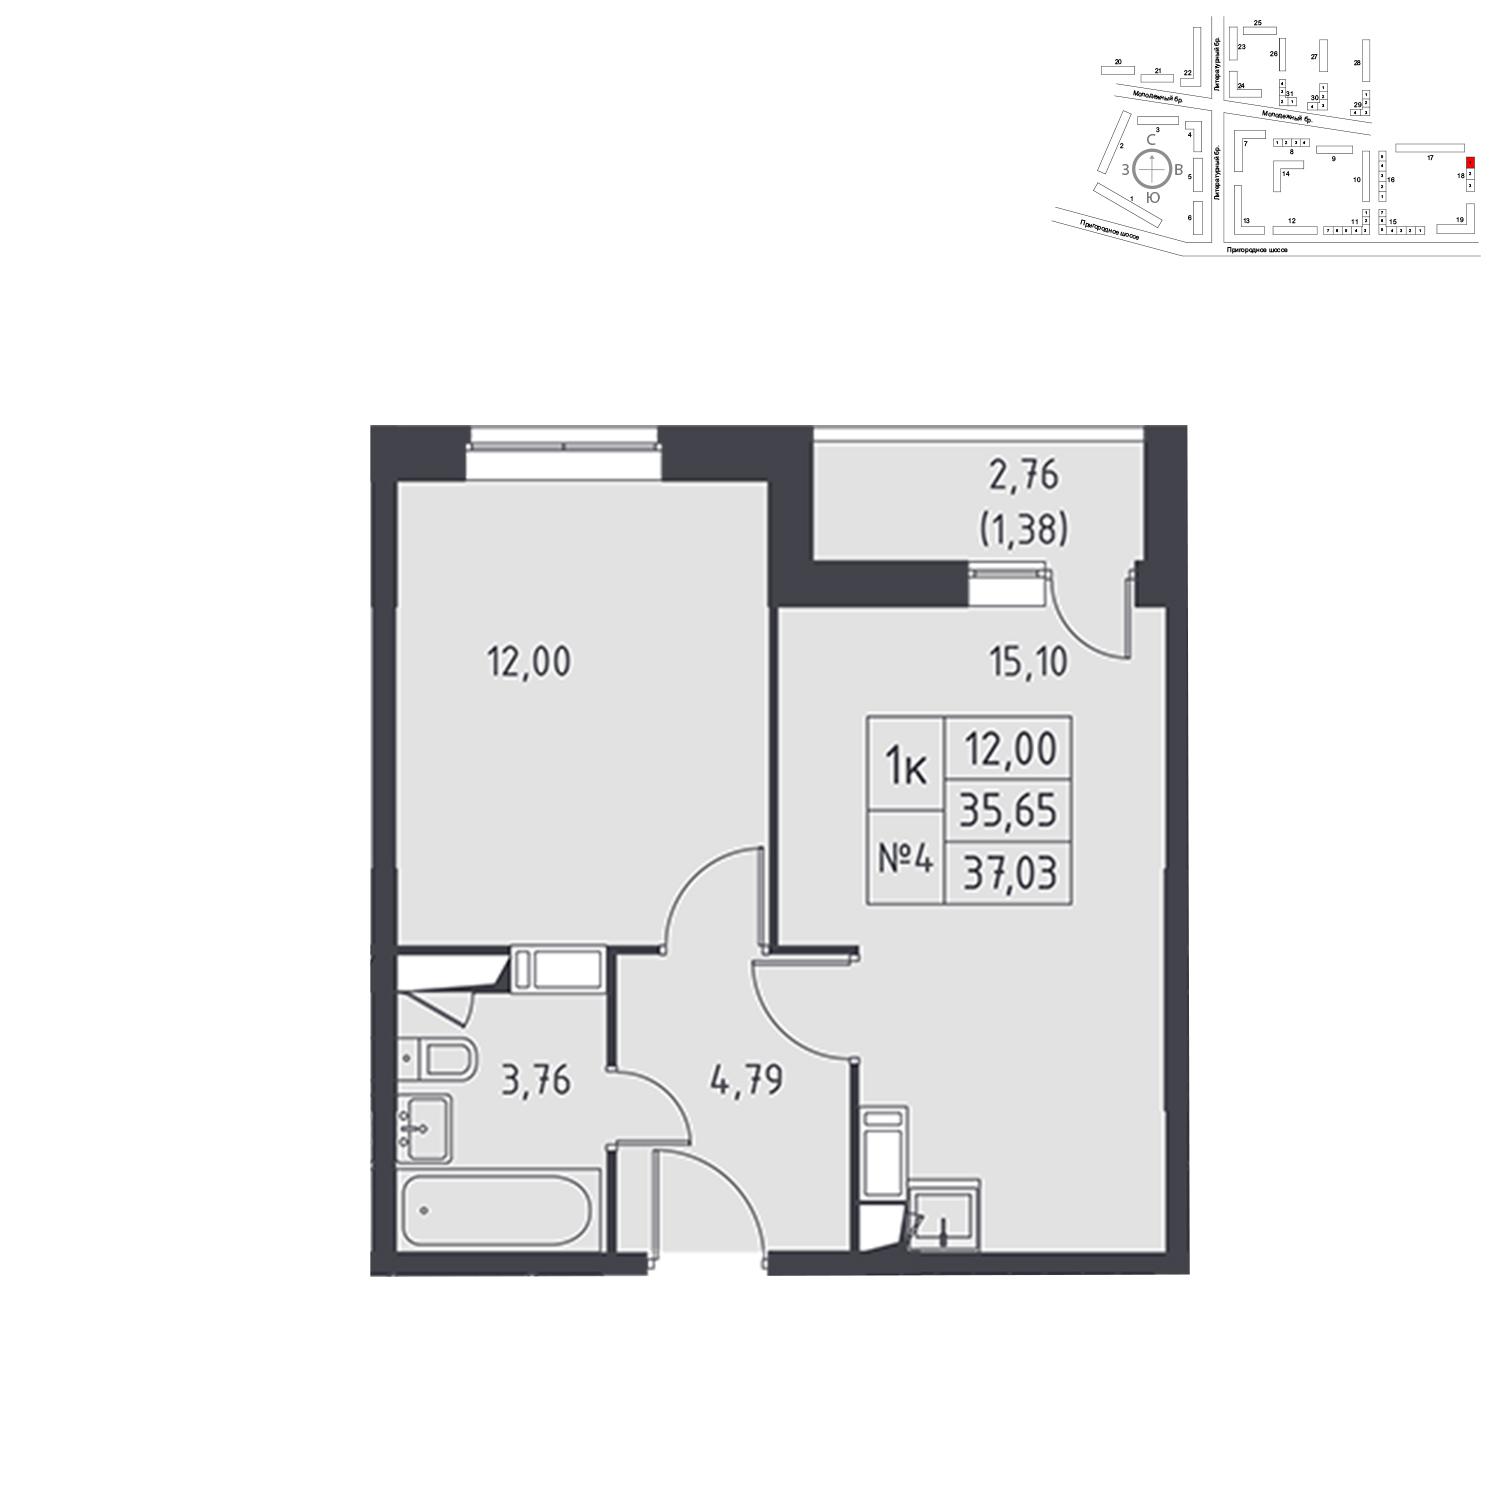 Продаётся 1-комнатная квартира в новостройке 37.0 кв.м. этаж 14/17 за 3 958 396 руб 